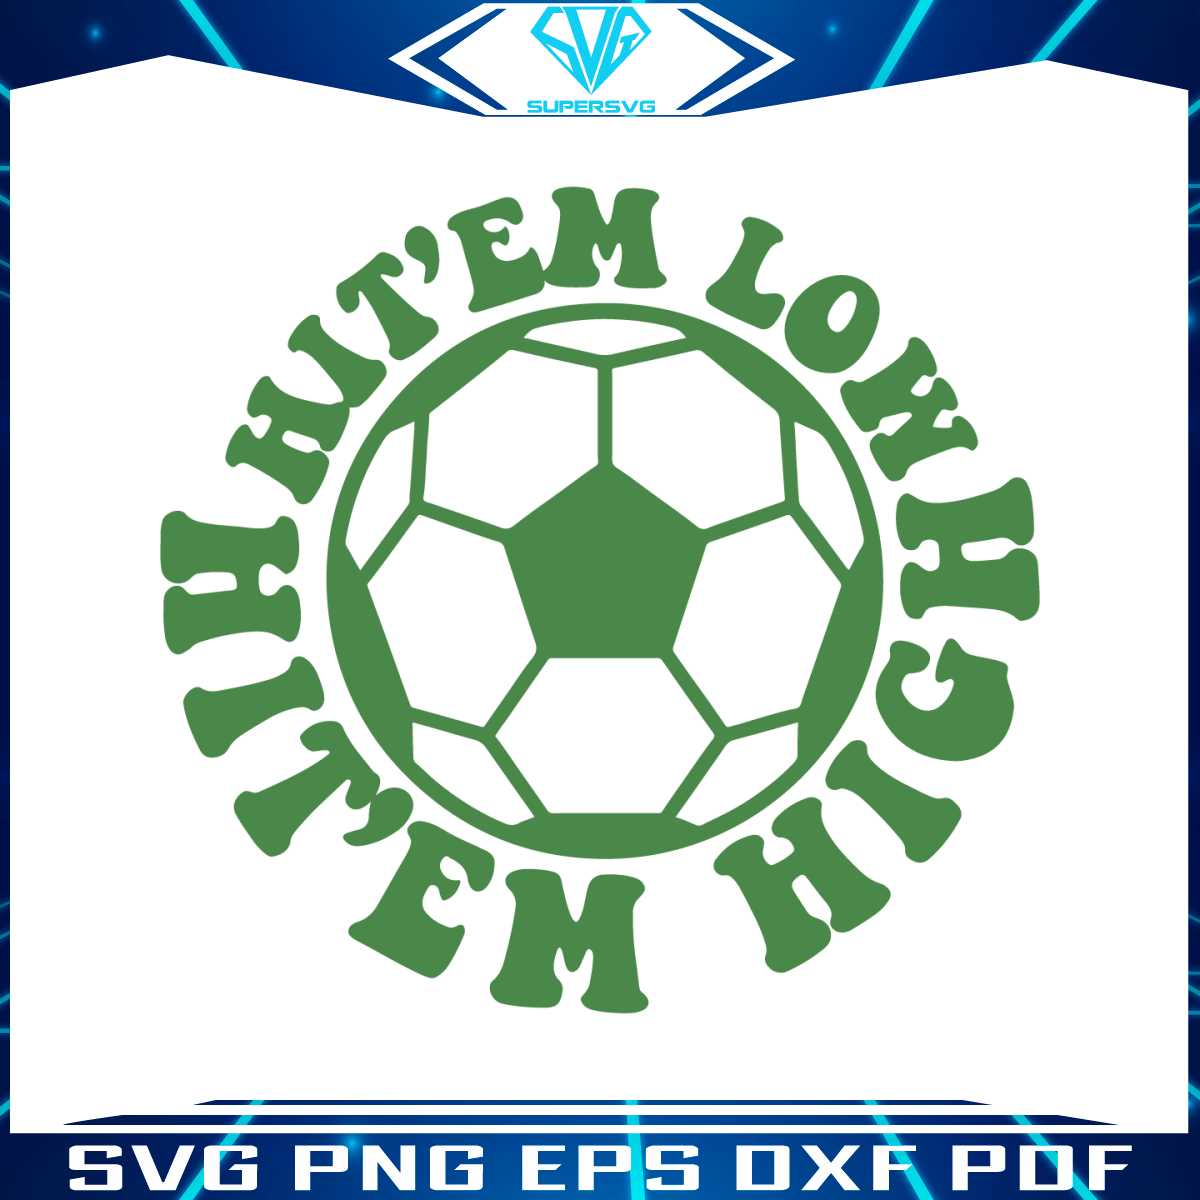 vintage-hit-em-low-hit-em-high-football-team-svg-cricut-file